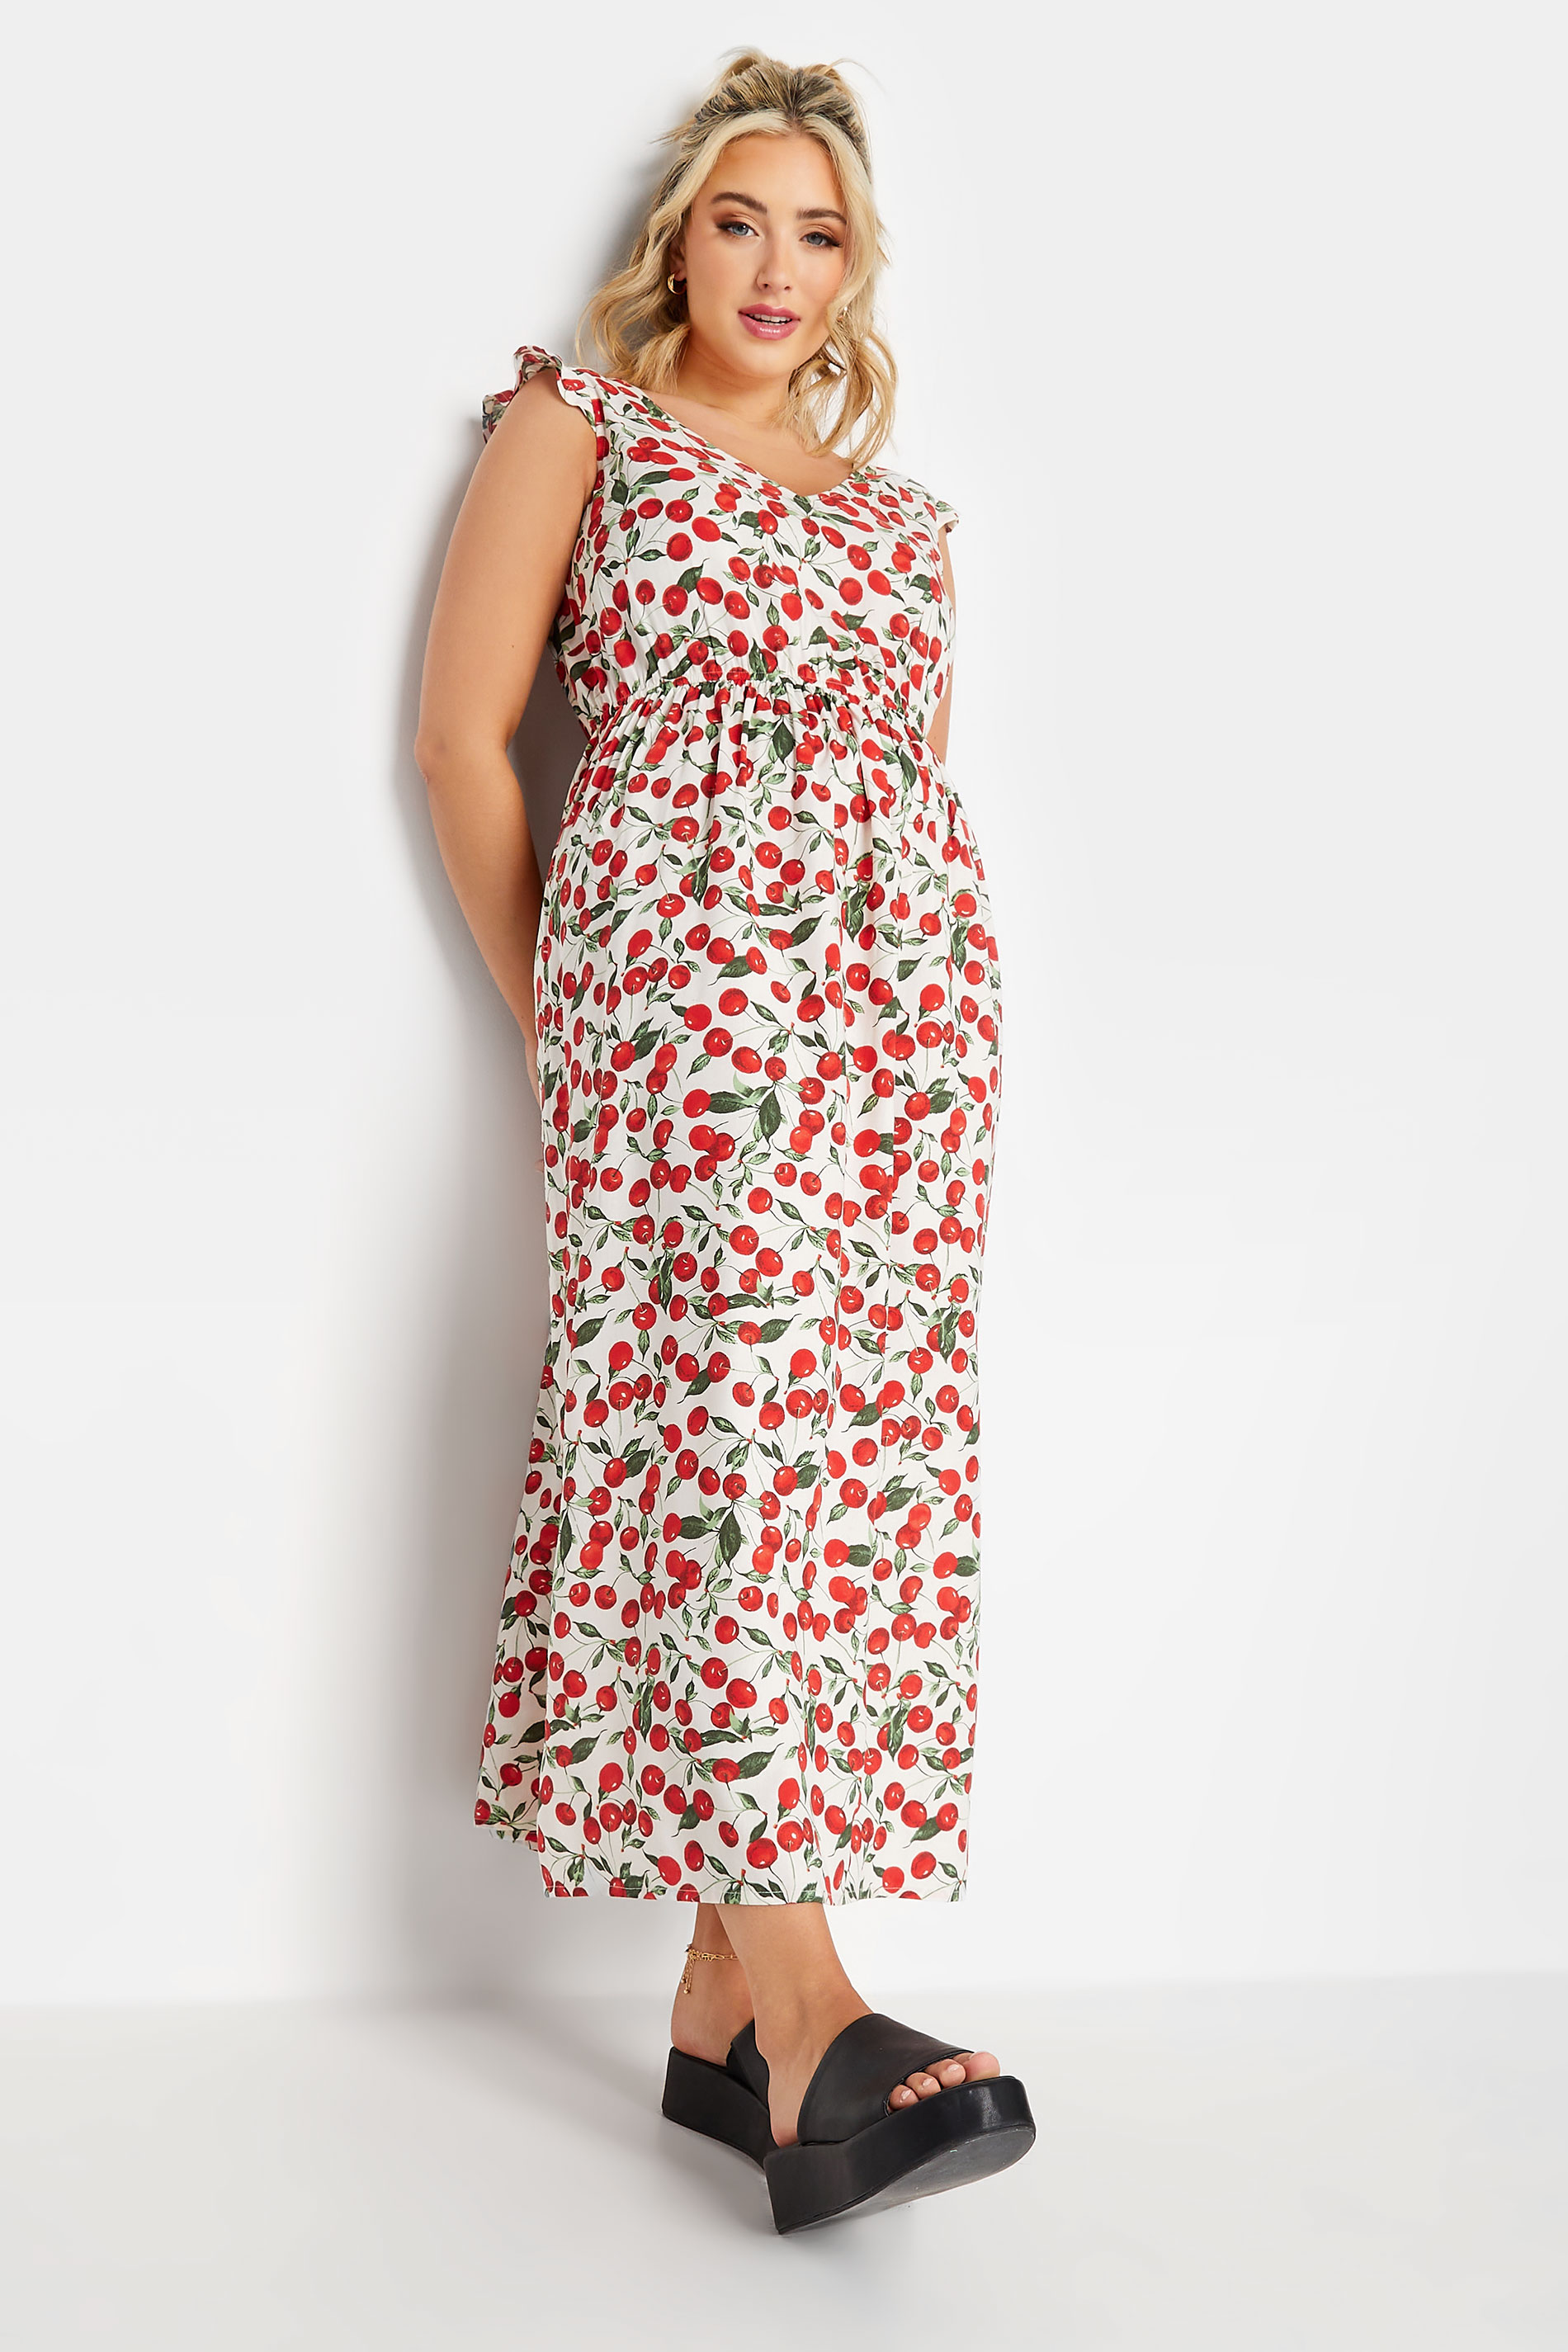 Pretty Red Floral Print Dress - Maxi Dress - Surplice Maxi Dress